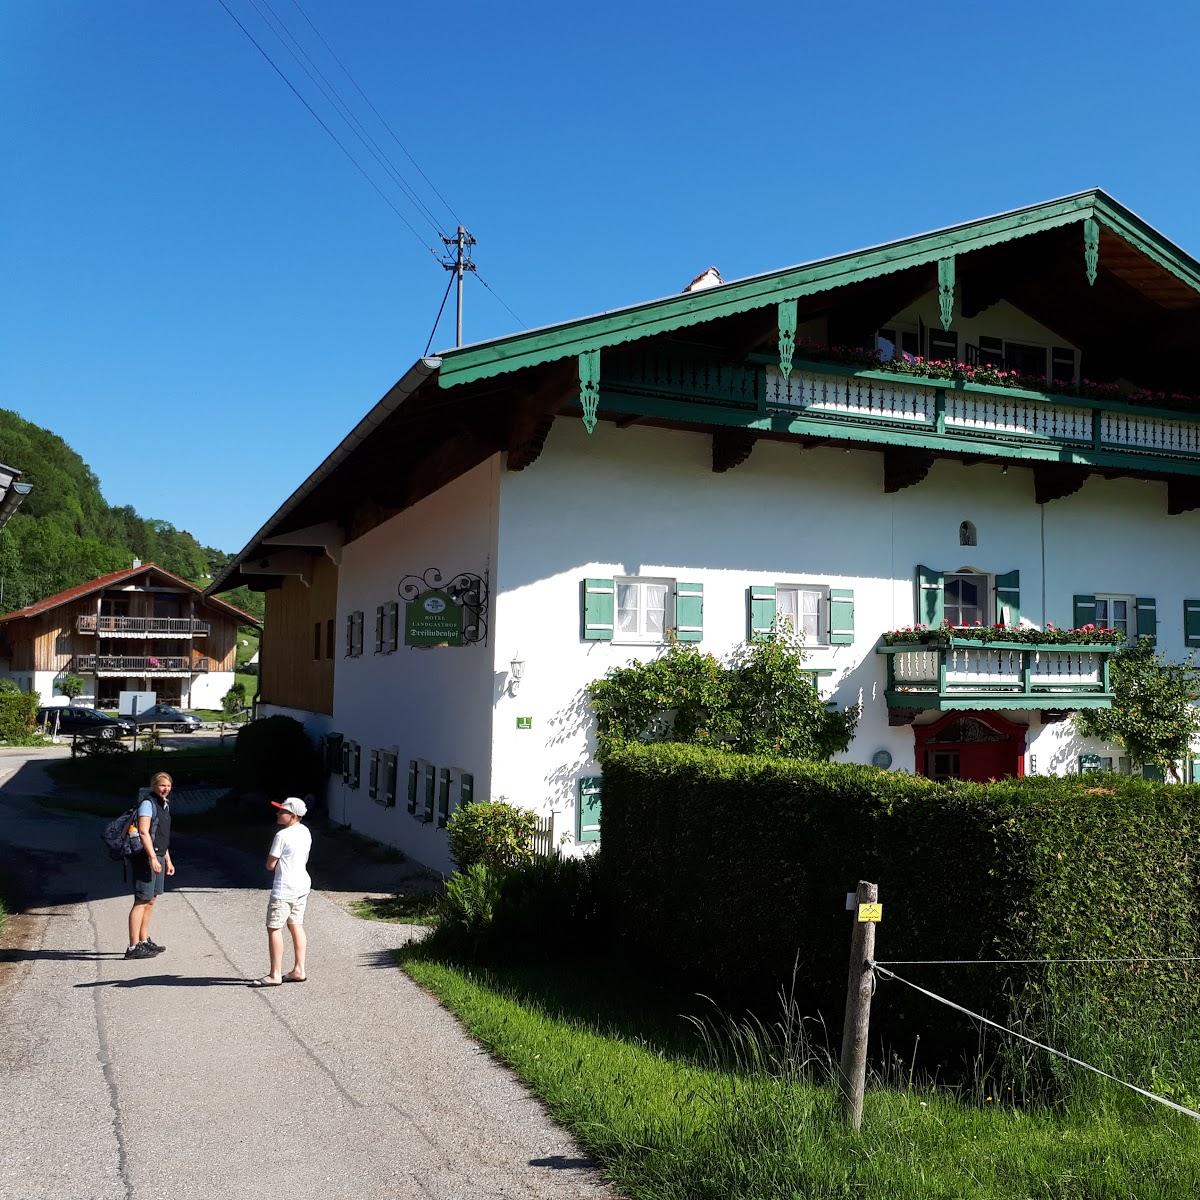 Restaurant "Hotel Pension Dreilindenhof" in Aschau im Chiemgau